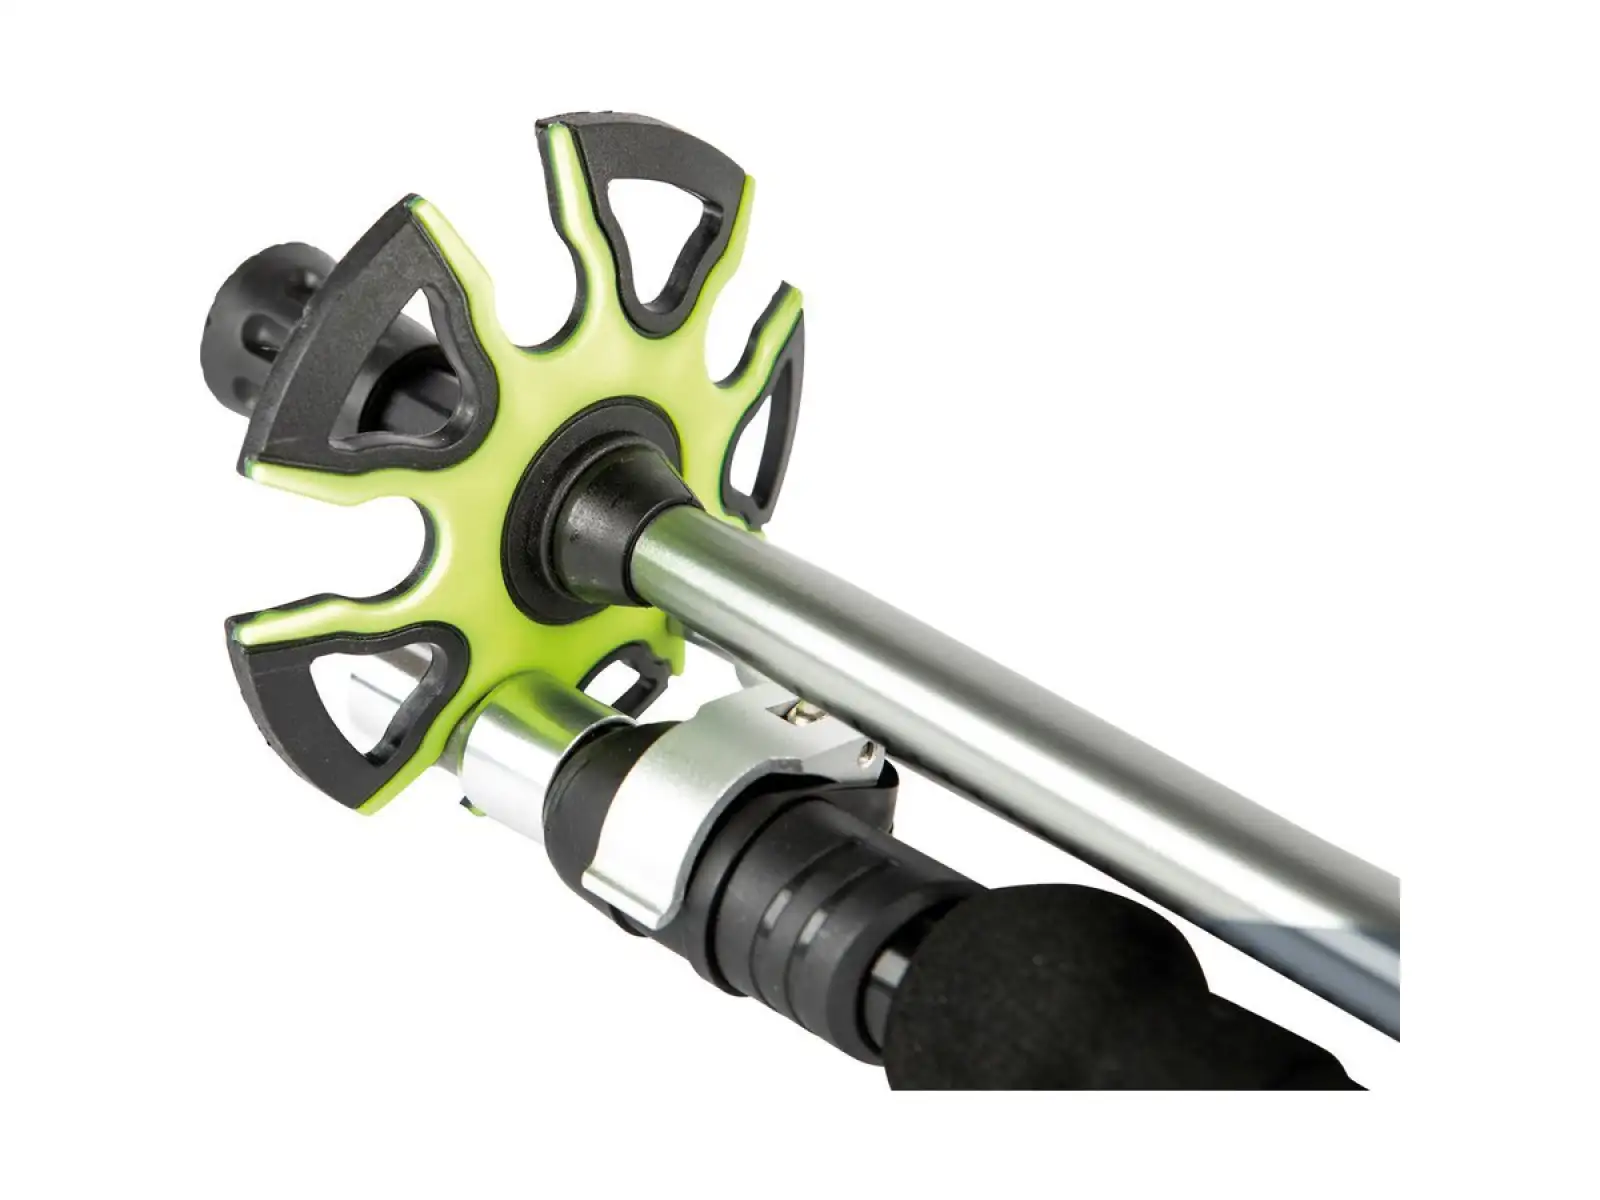 Nitro Foldable Poles teleskopické hůlky na splitboard černá/šedá/zelená